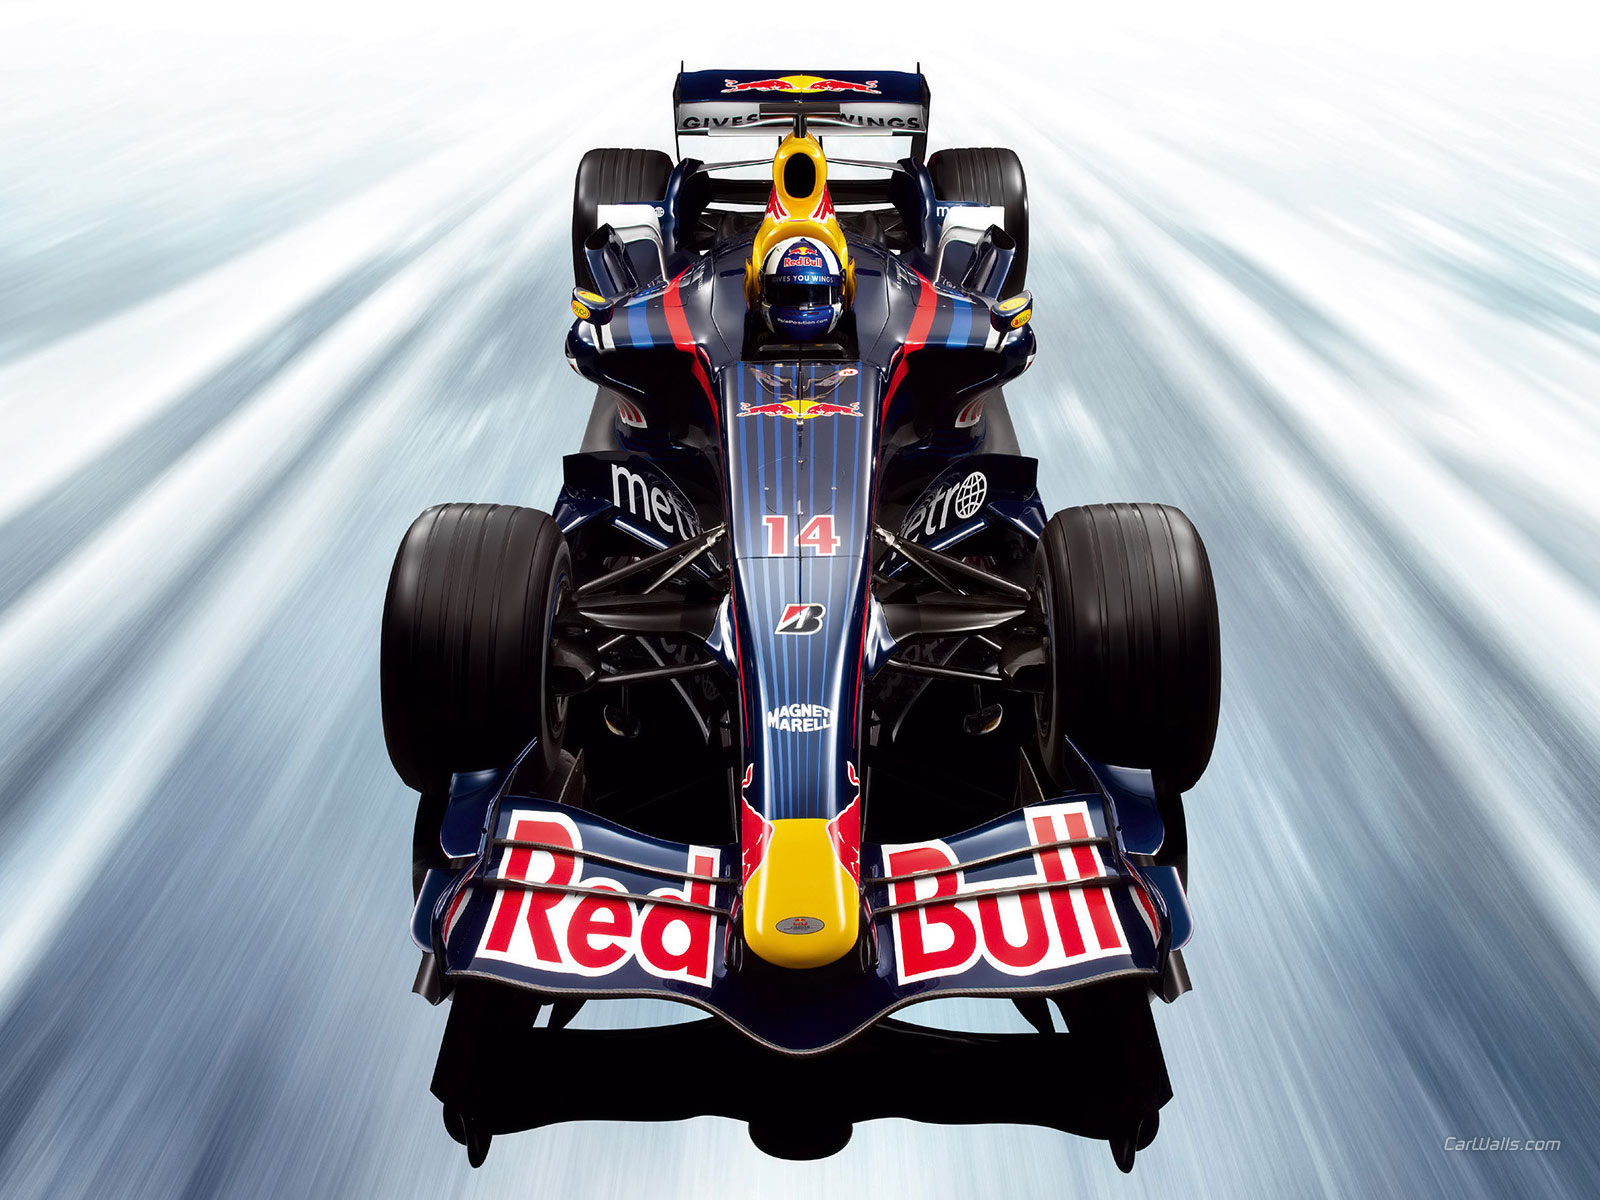 Fond d'ecran Red Bull voiture de course